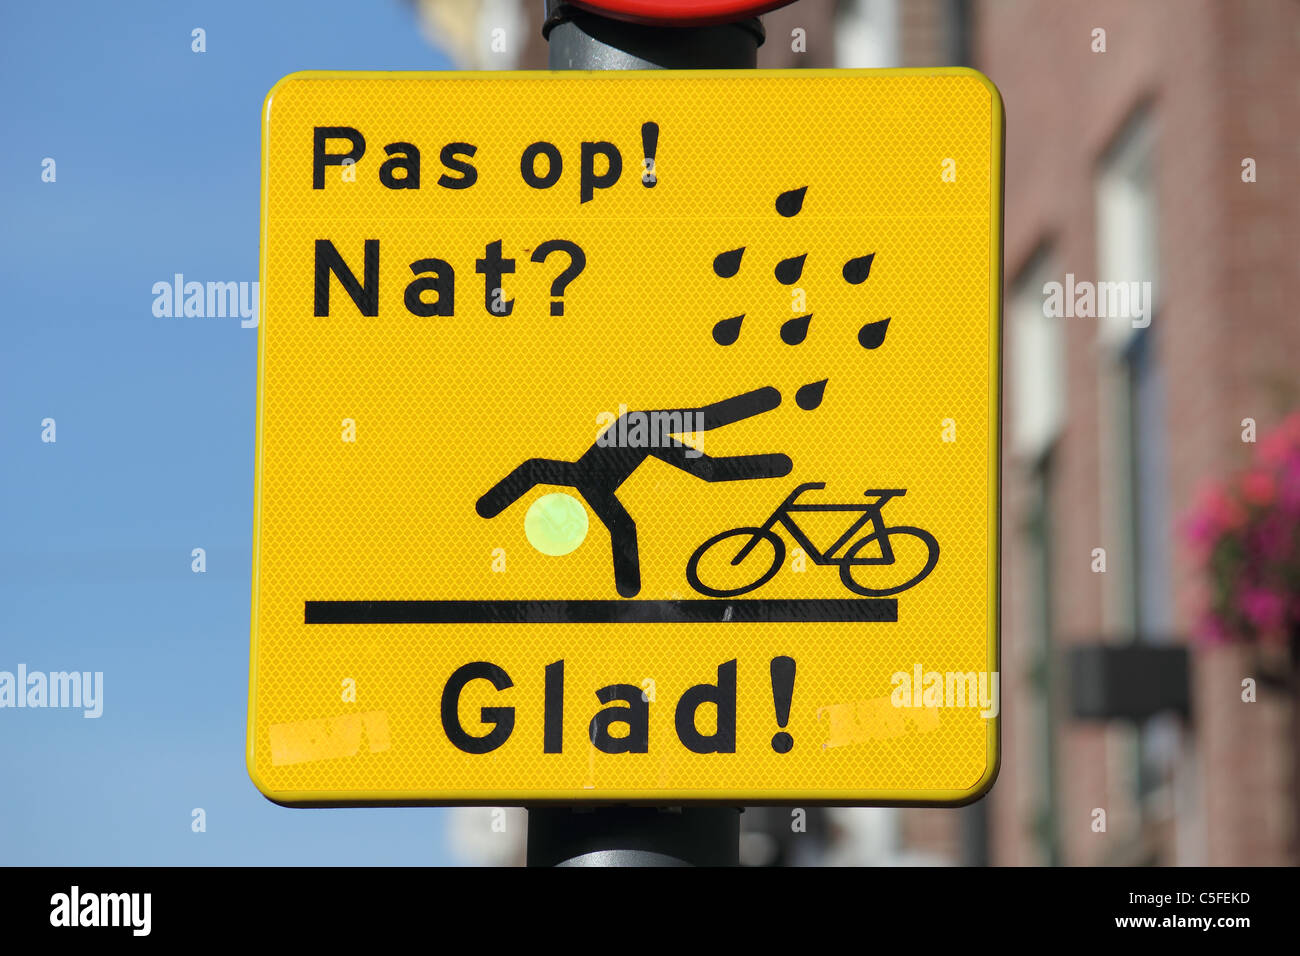 Een verkeersbord met de tekst PAS OP NAT ? Heureux ! En een tekening van een fiets en een persoon vallend Banque D'Images